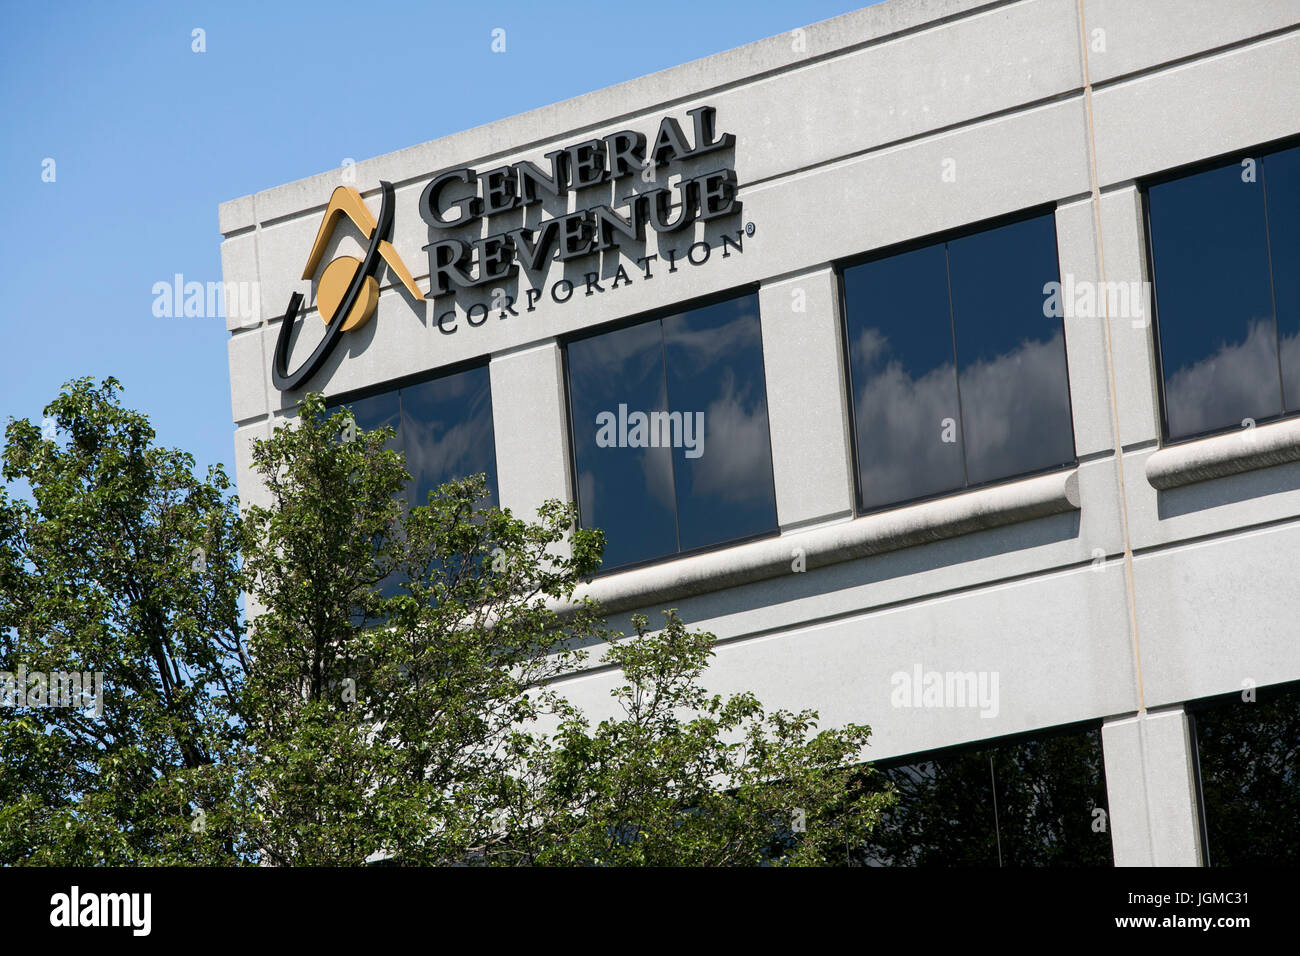 Un segno del logo al di fuori di una struttura occupata dalle entrate generali Corporation, una società affiliata di Navient, a Mason, Ohio il 2 luglio 2017. Foto Stock